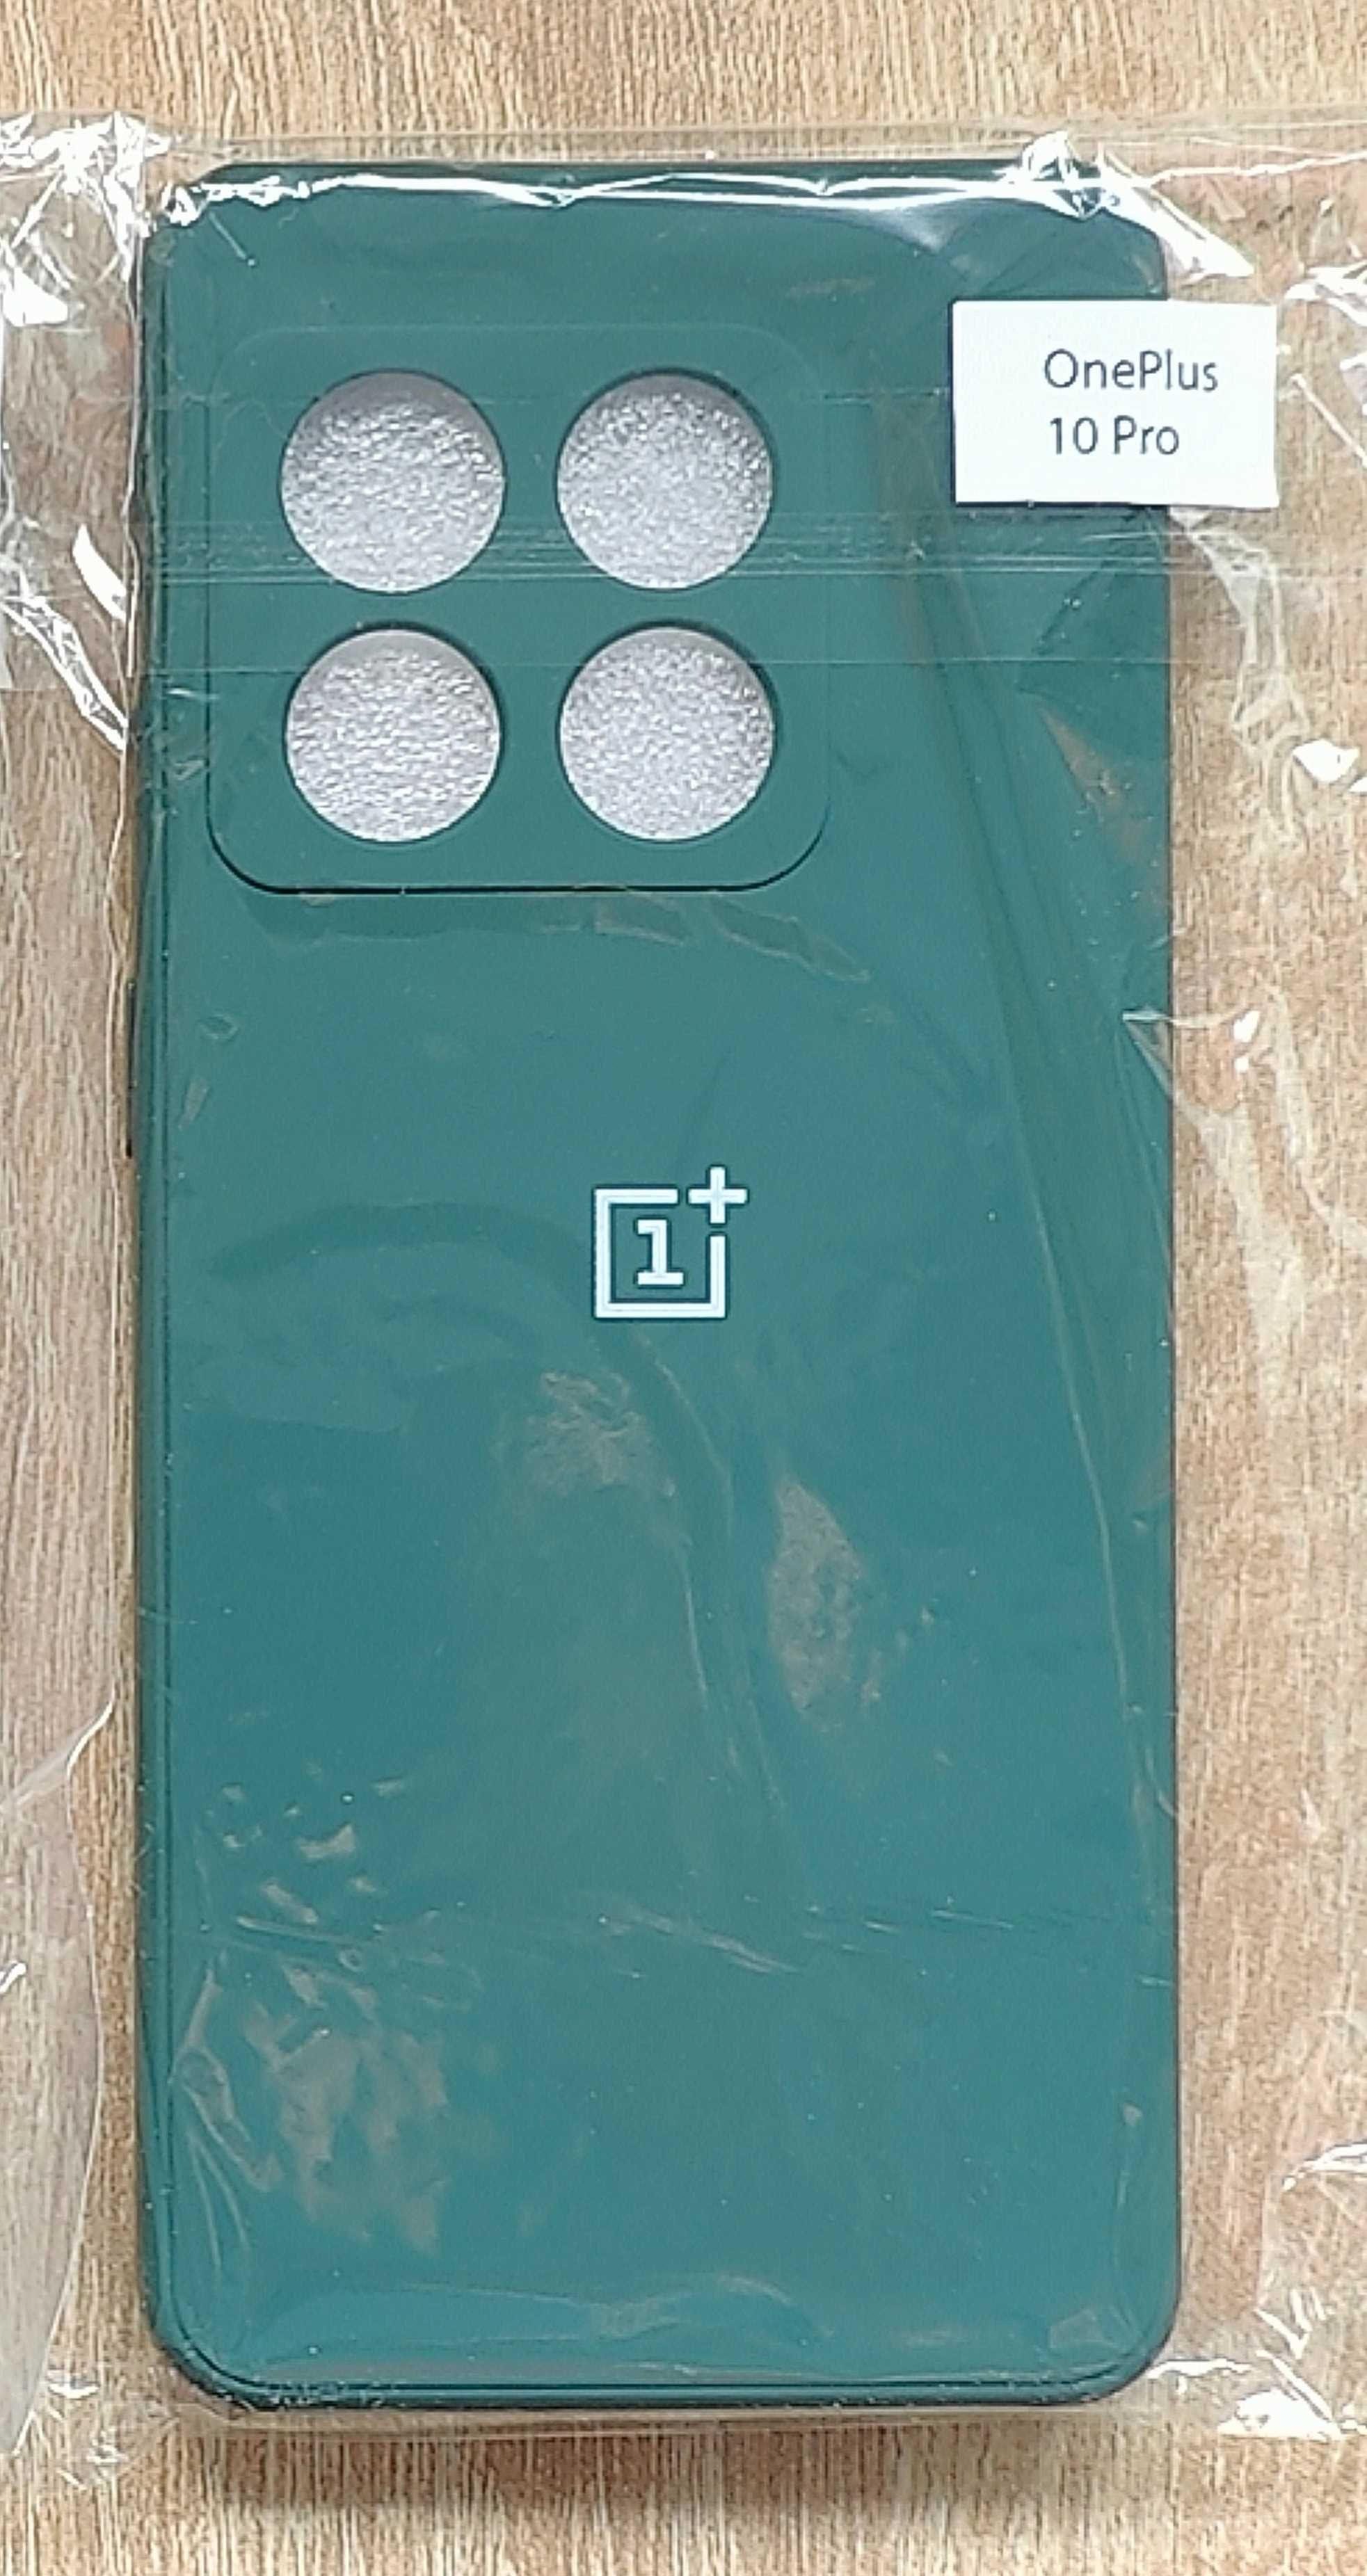 Чехол на OnePlus 10 Pro с лого 1+.